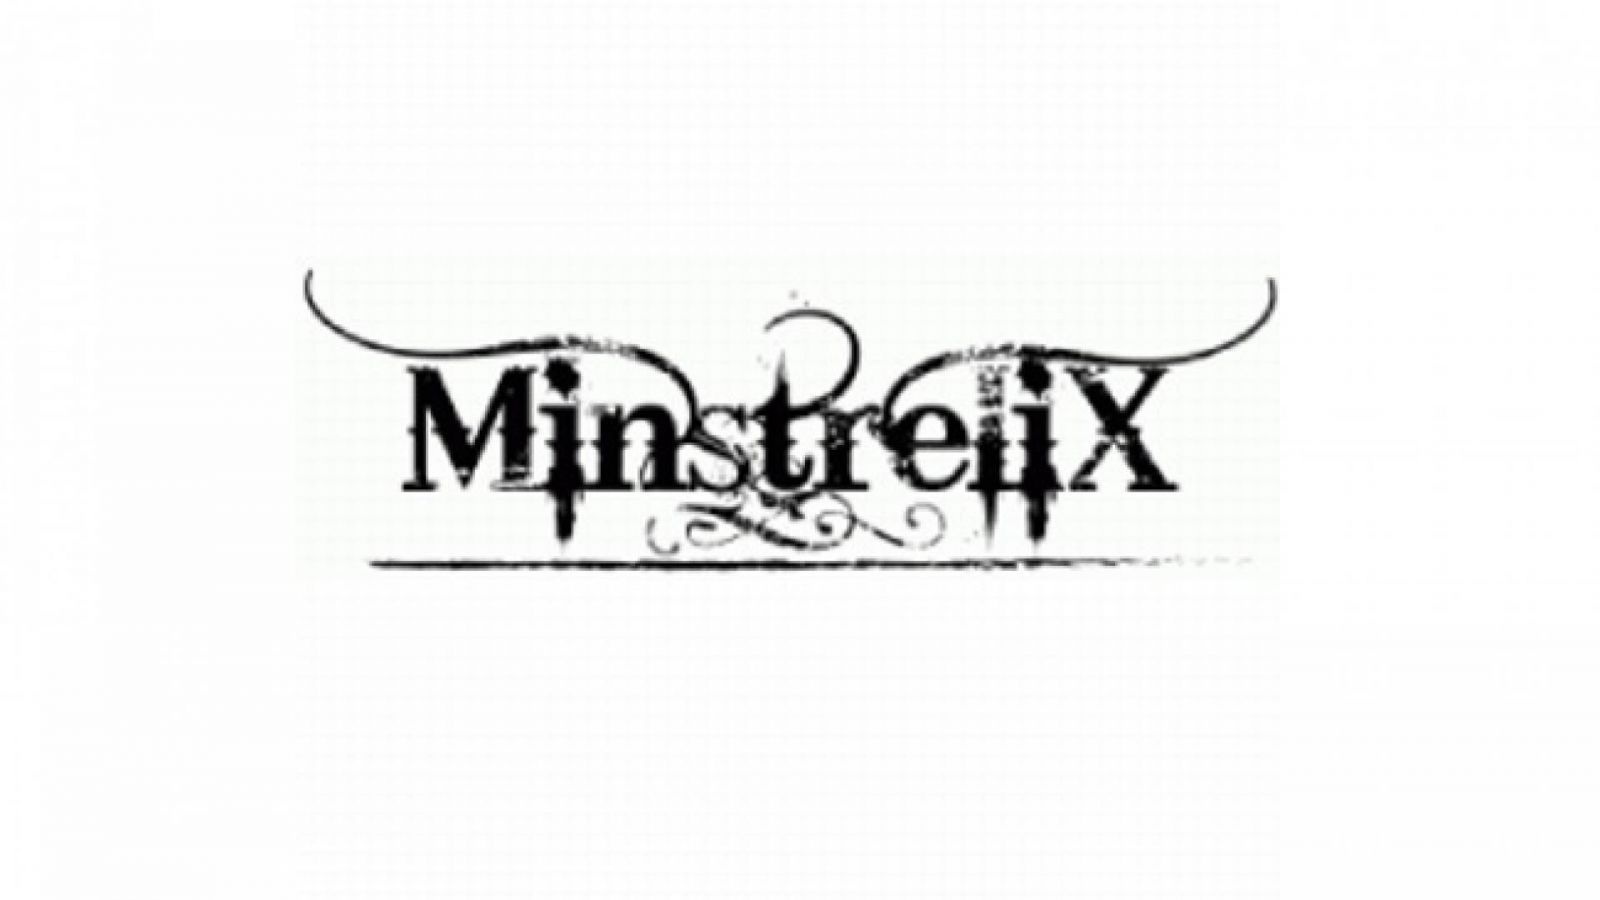 Nouvel album de MinstreliX © MinstreliX. All rights reserved.